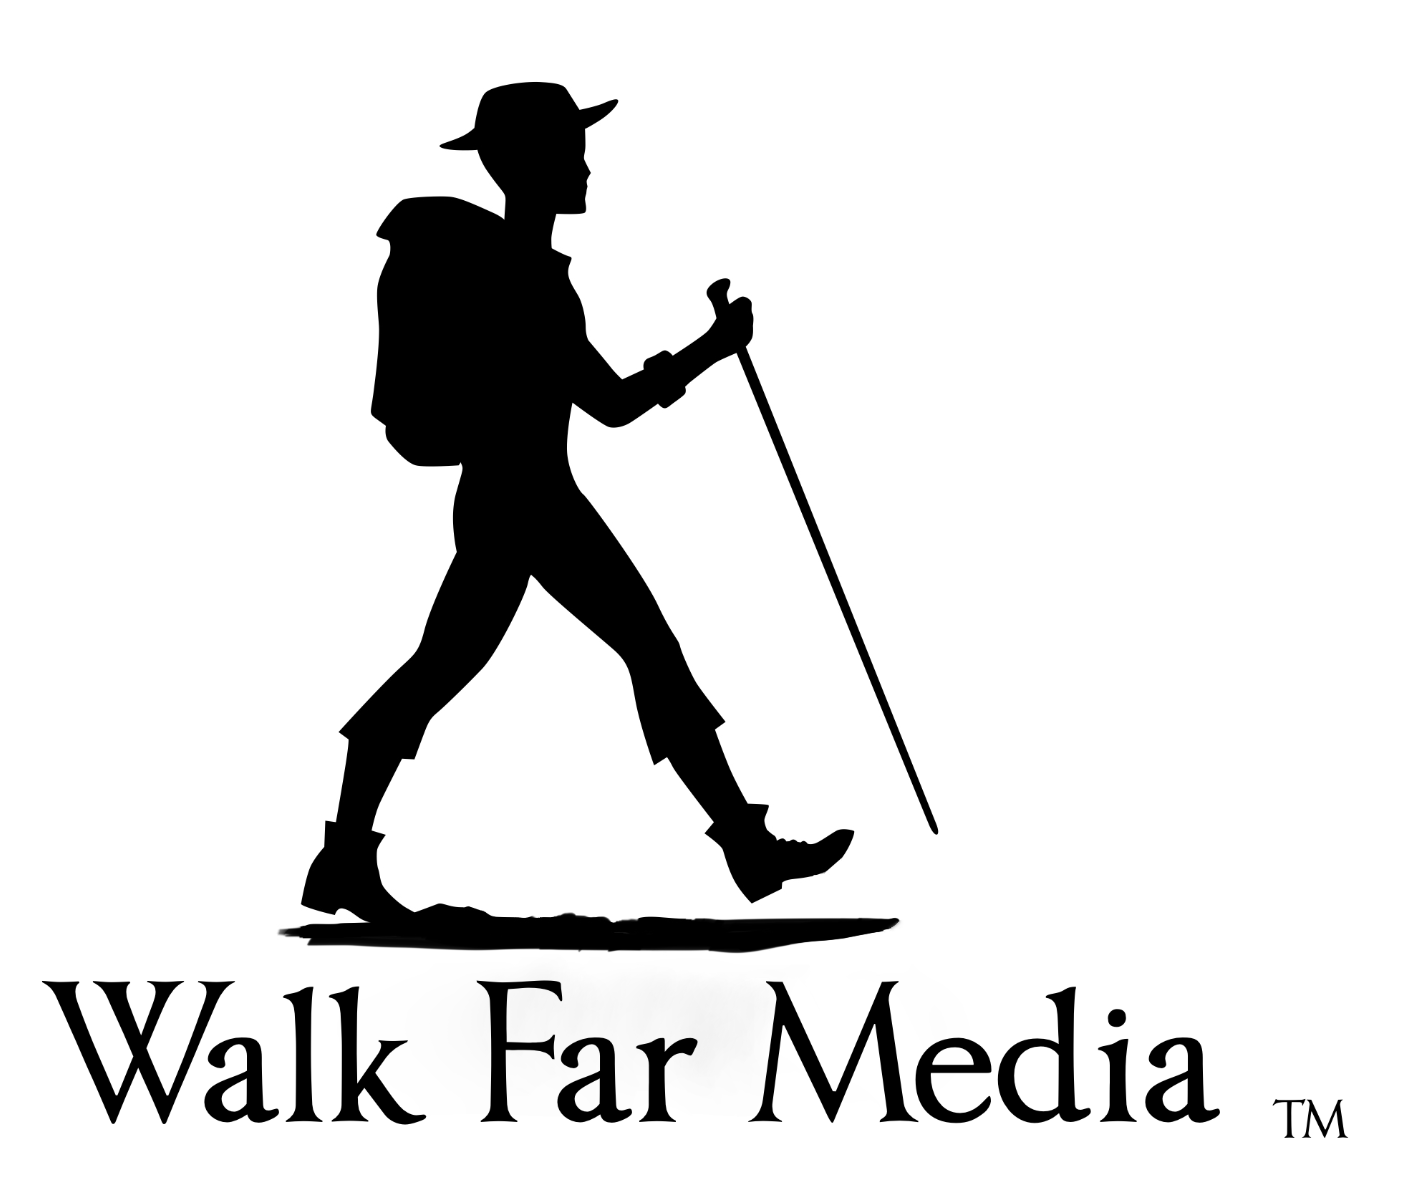 Walk Far Media